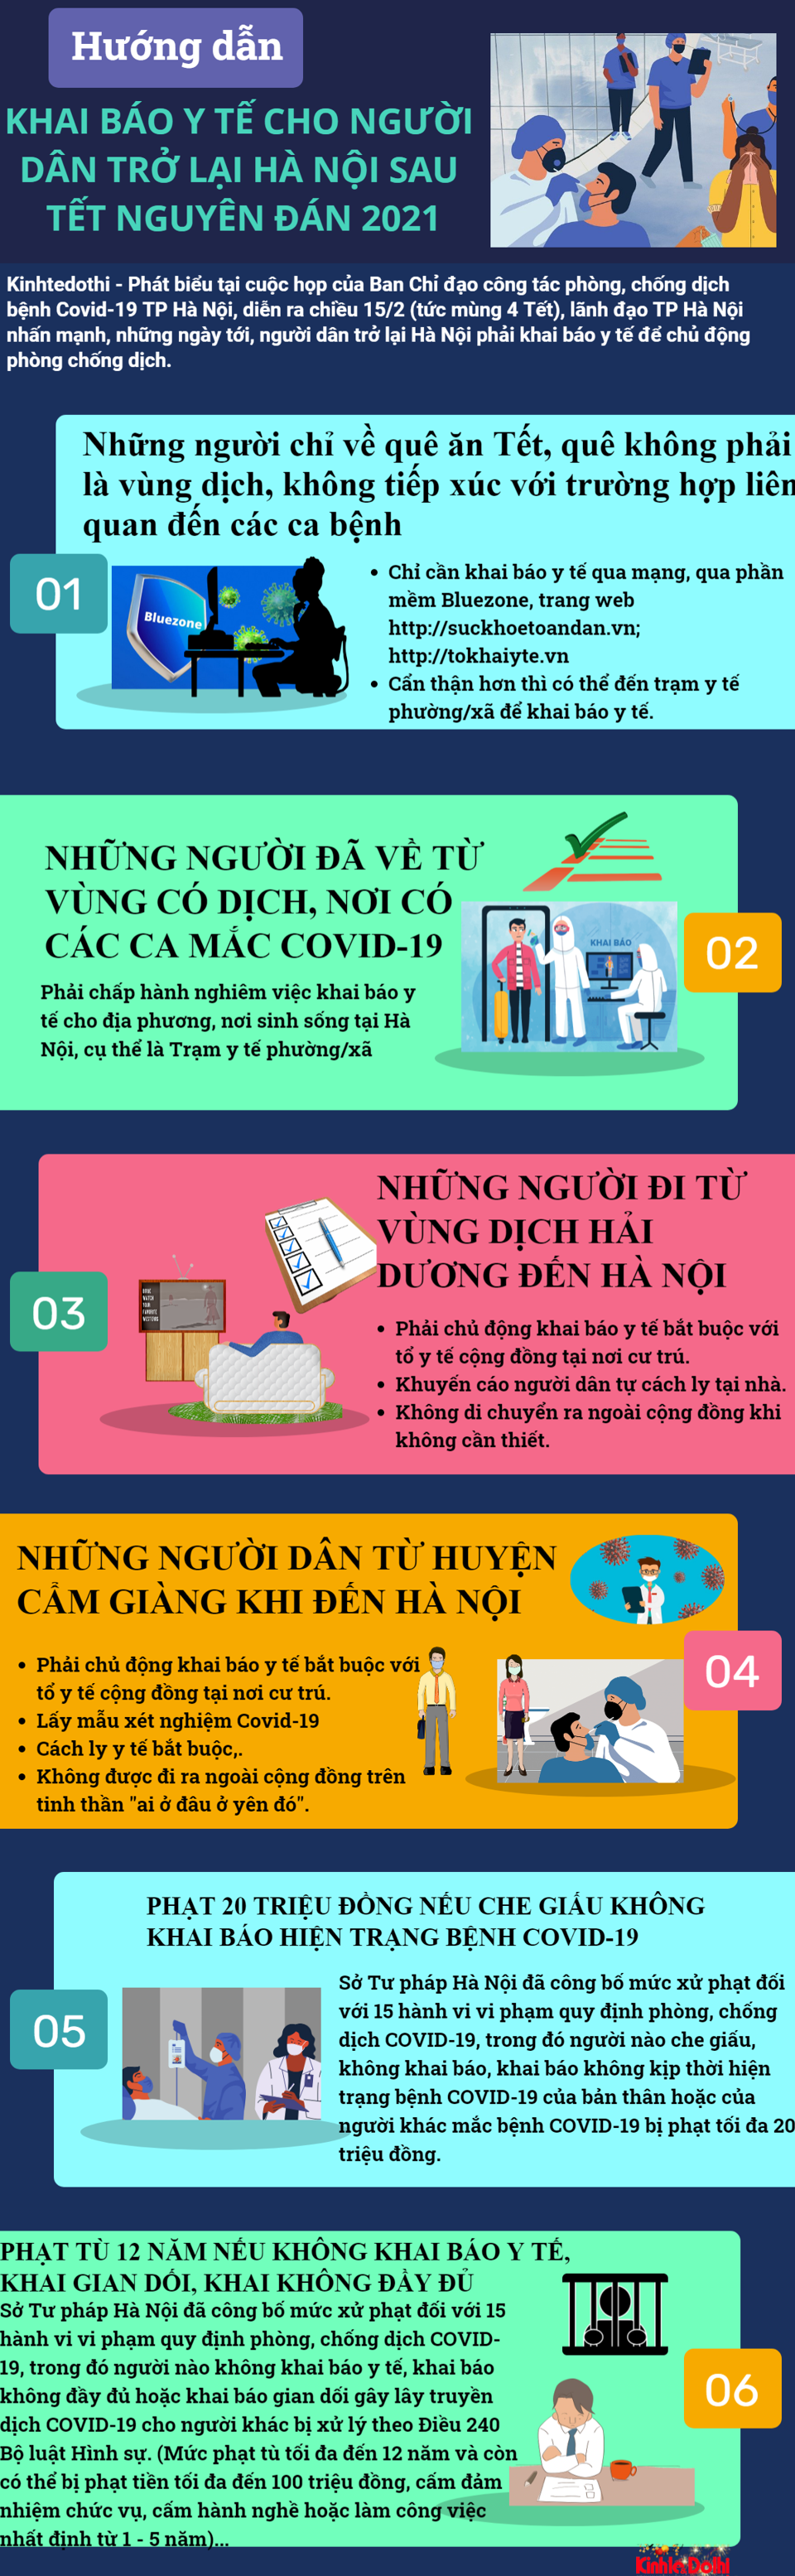 [Infographic] Hướng dẫn khai báo y tế cho người dân trở lại Hà Nội sau kỳ nghỉ Tết Nguyên Đán - Ảnh 1